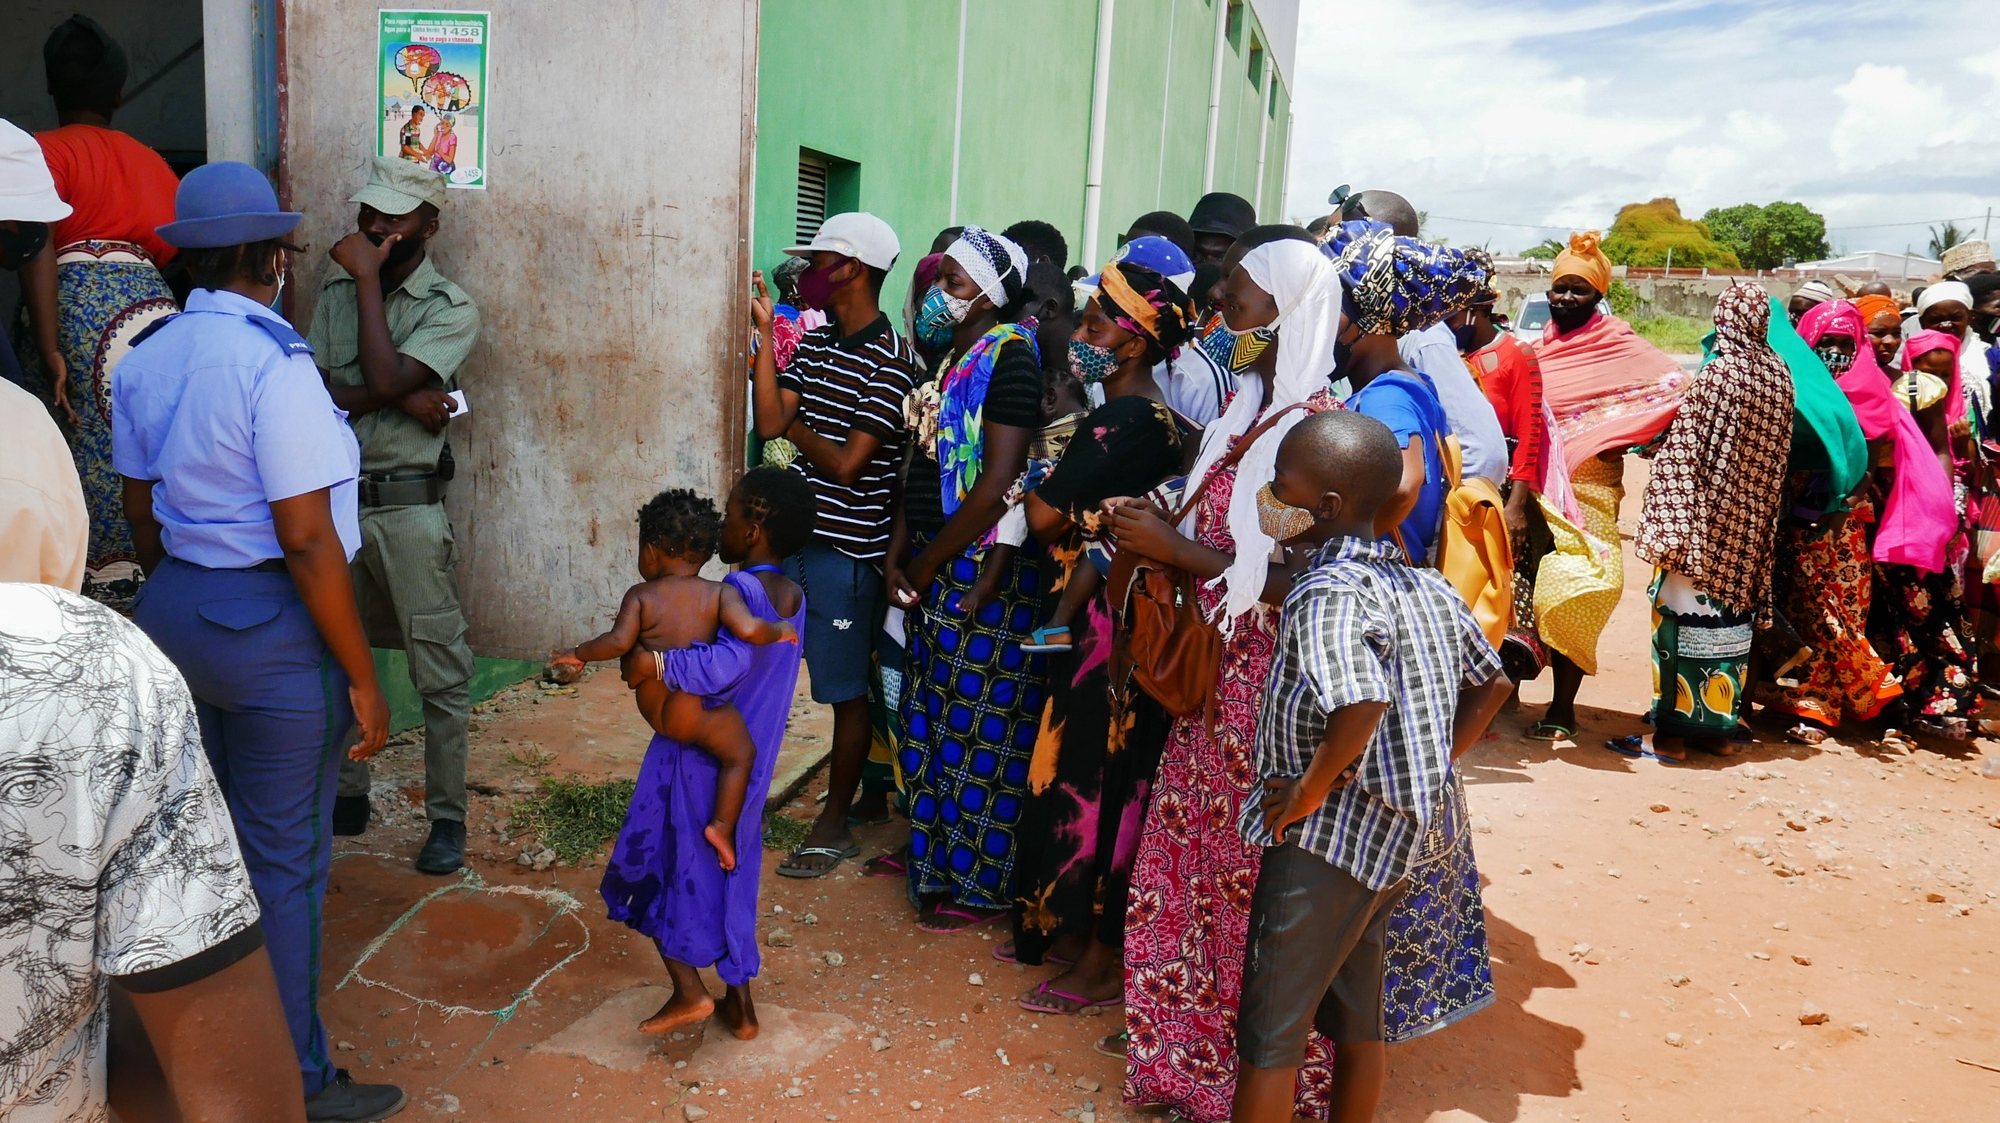 Vários deslocados de Palma à porta do centro de abrigo temporário onde o pavilhão que continua a ser um campo de jogos, mas agora de crianças refugiadas da guerra, cujas famílias não têm ninguém para contactar em Pemba e por isso dispõem de abrigo temporário em locais como este, Pemba, Moçambique, 02 de abril de 2021. LUÍS MIGUEL FONSECA/LUSA